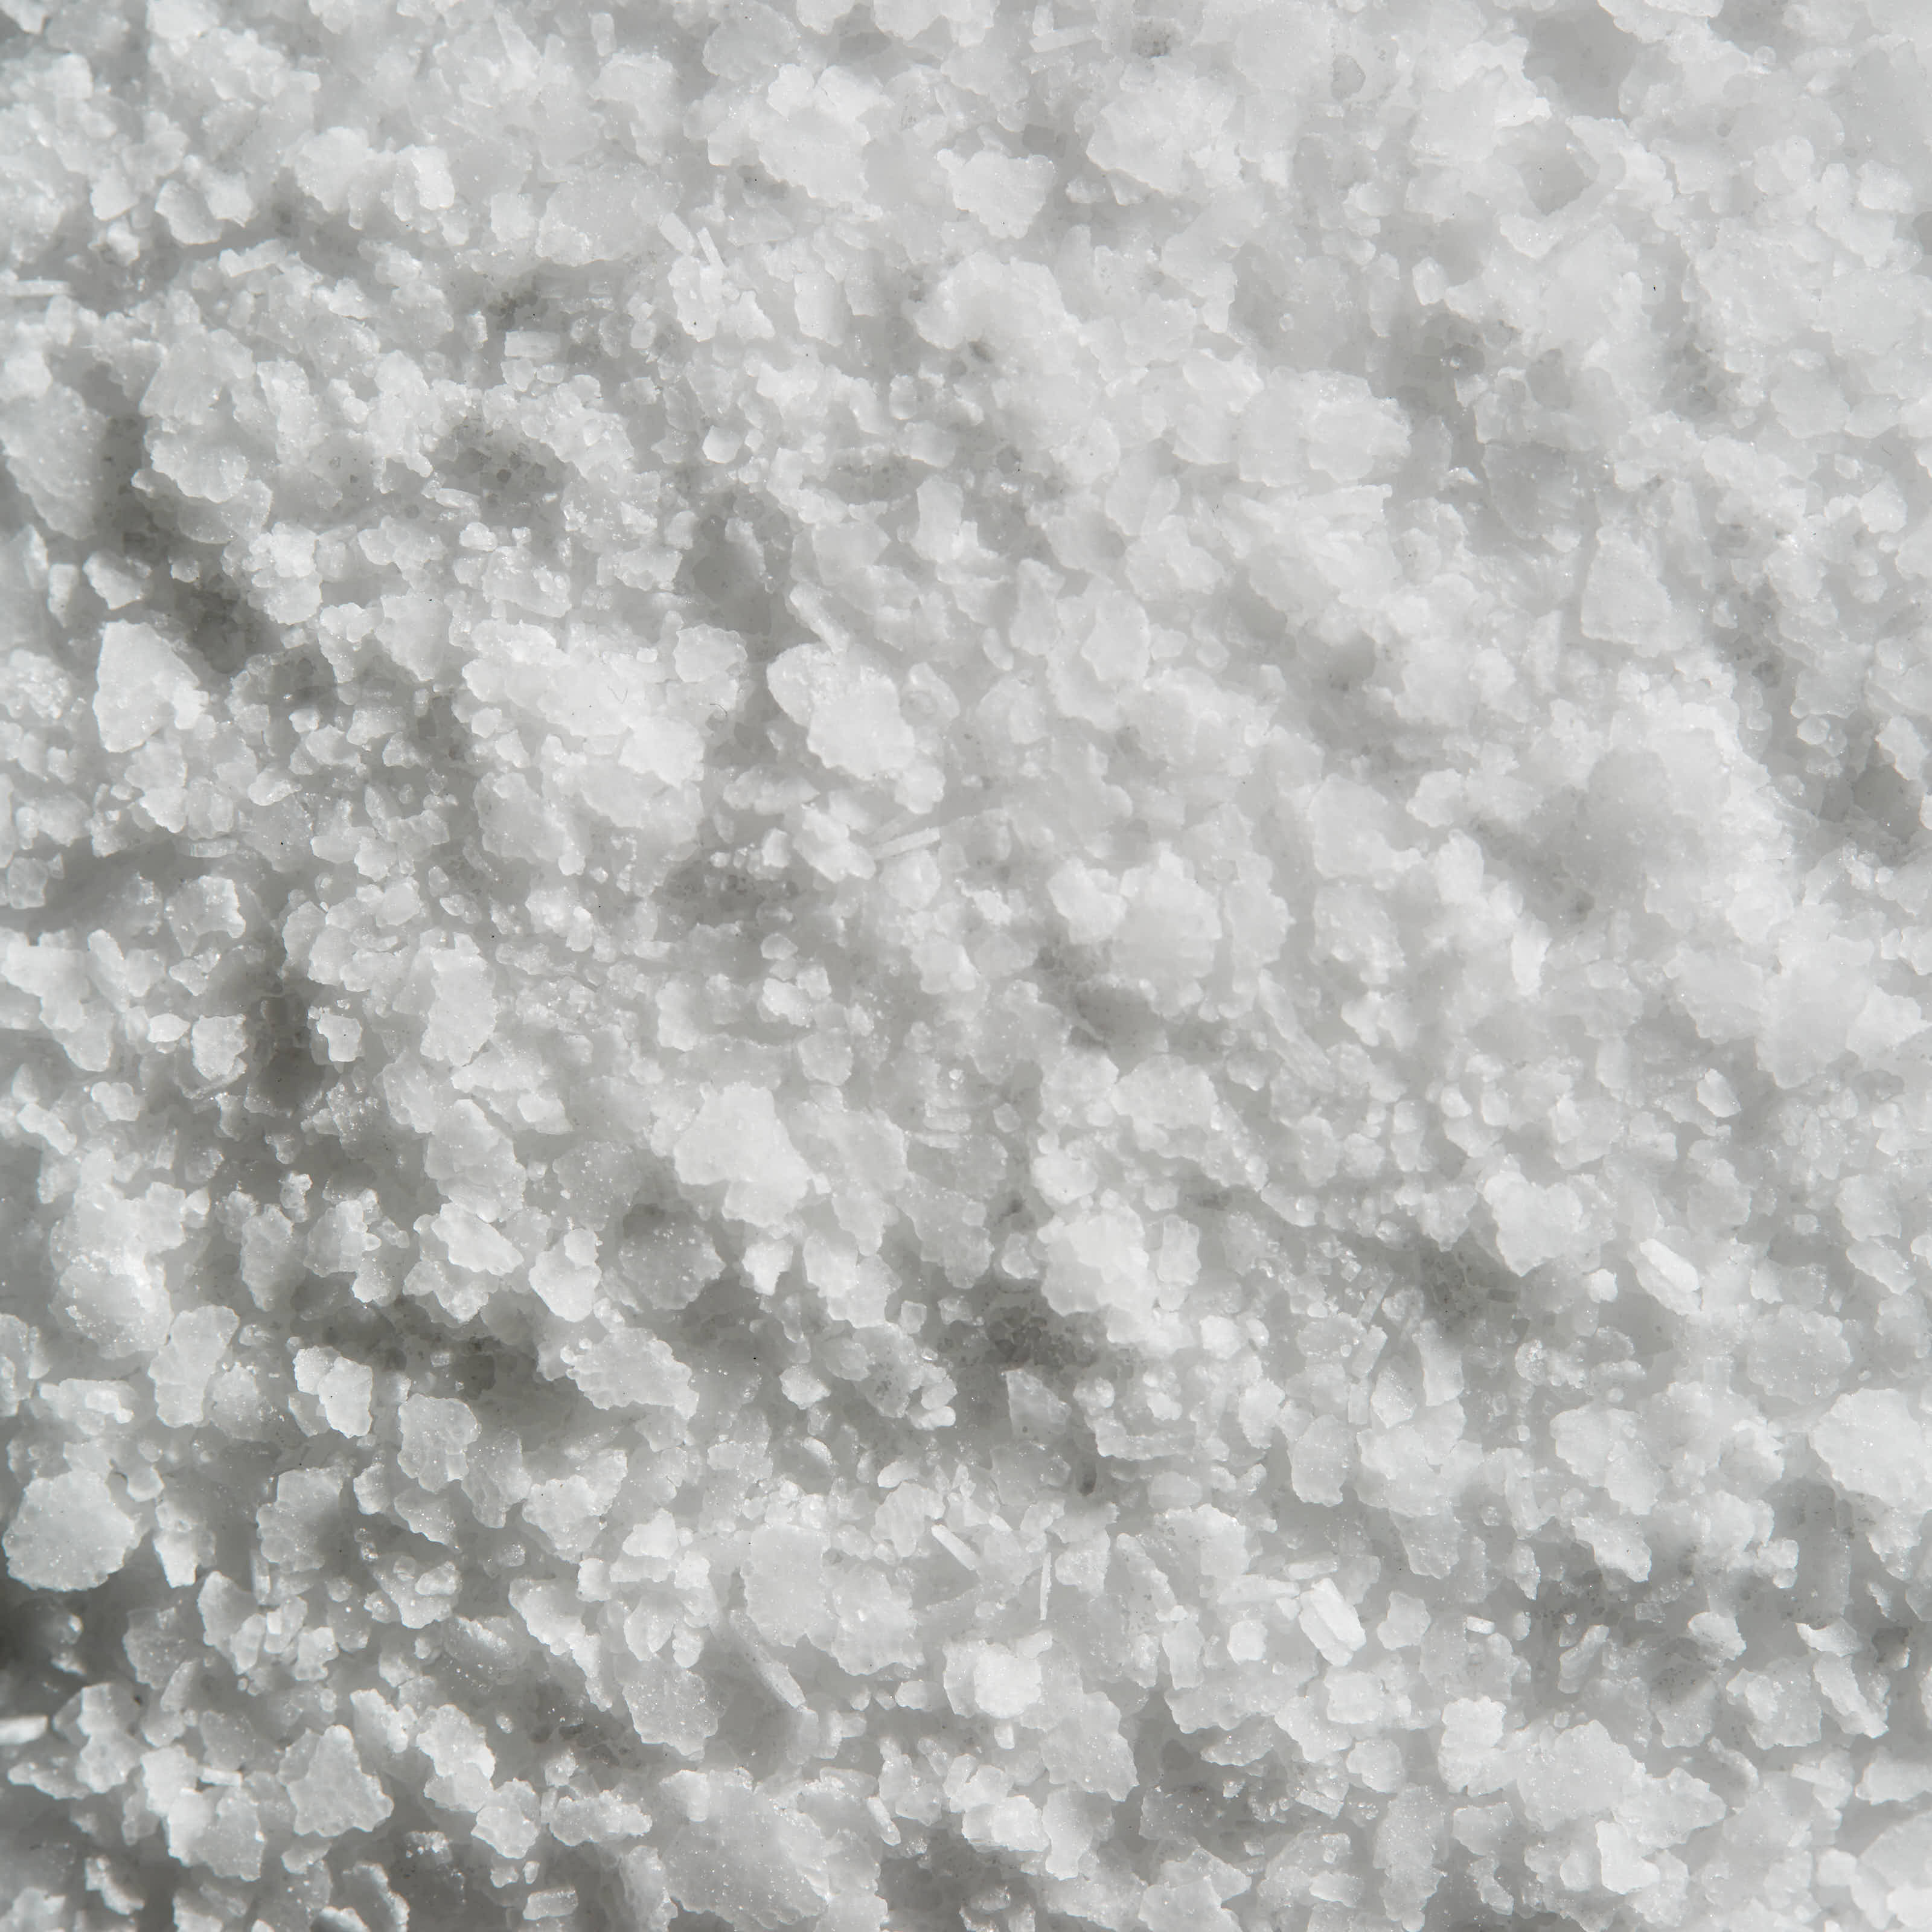 Flakey White Sea Salt Success